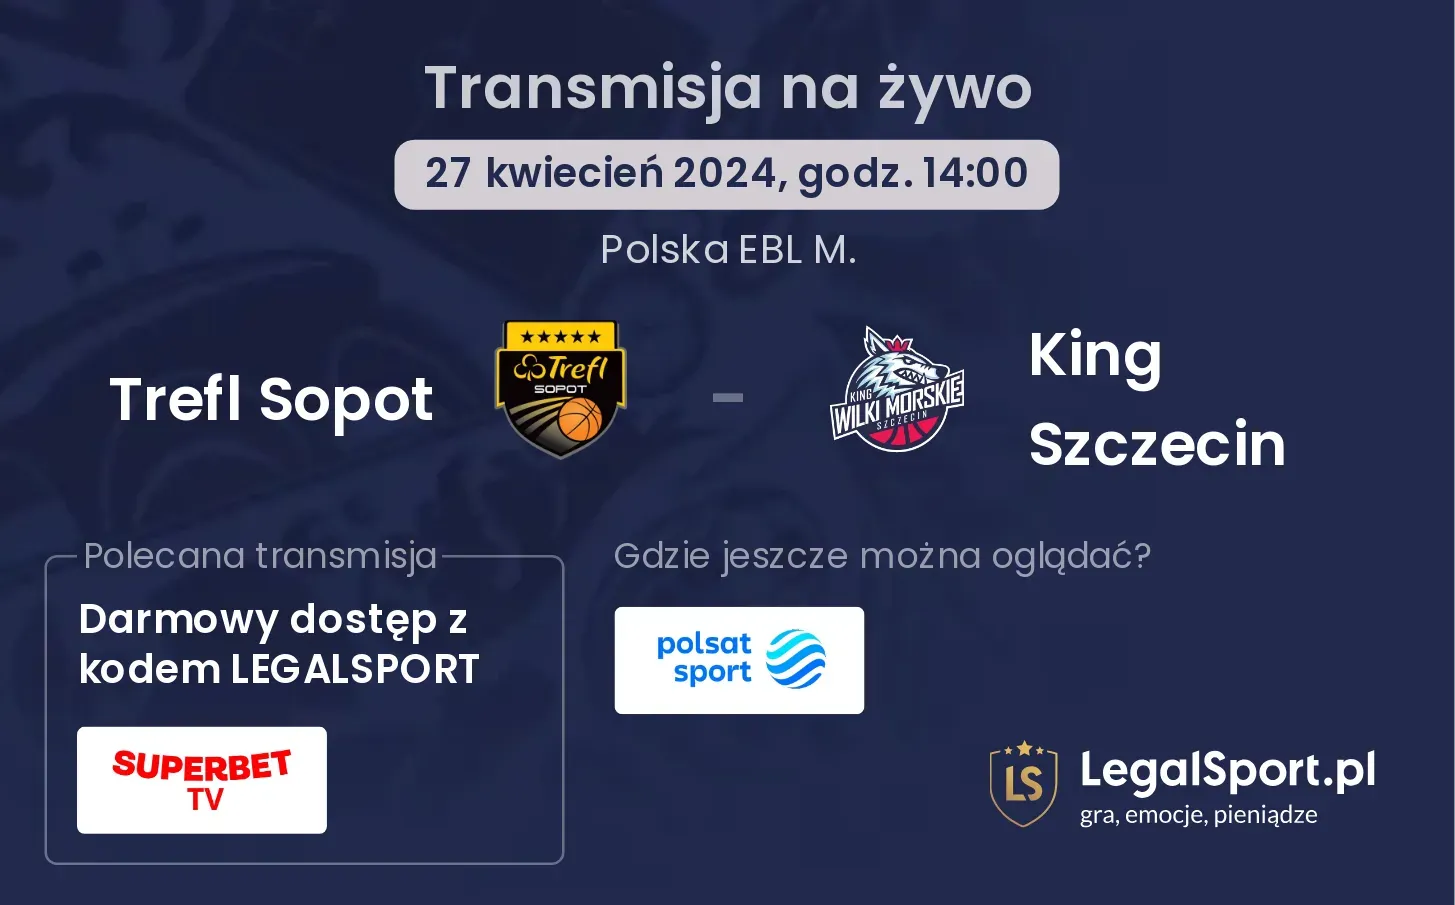 Trefl Sopot - King Szczecin transmisja na żywo